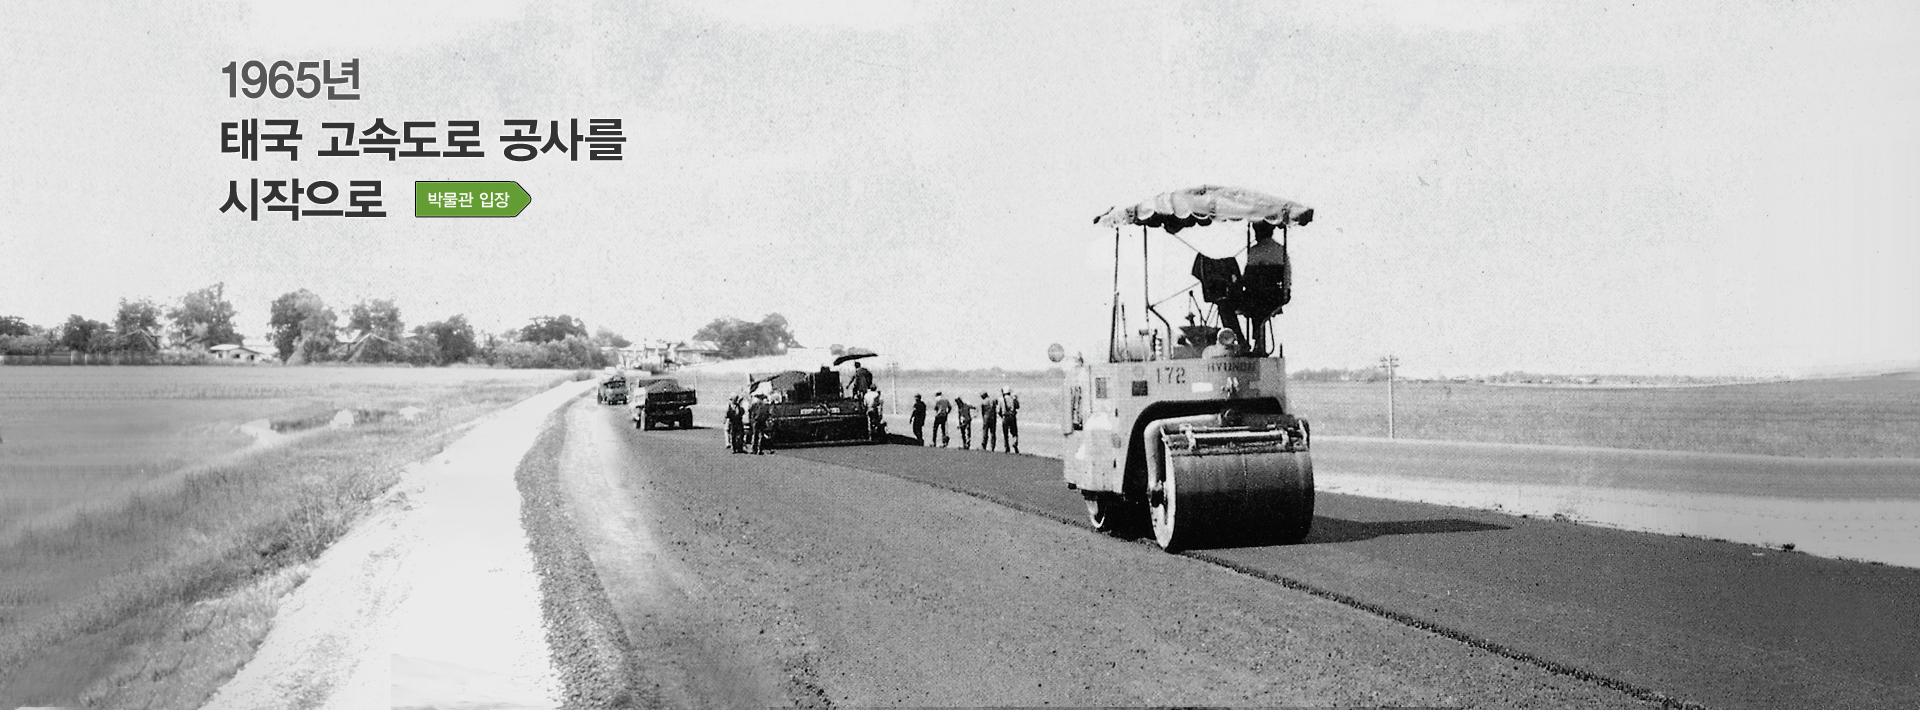 1965년 태국 고속도로 공사 건설을 시작으로